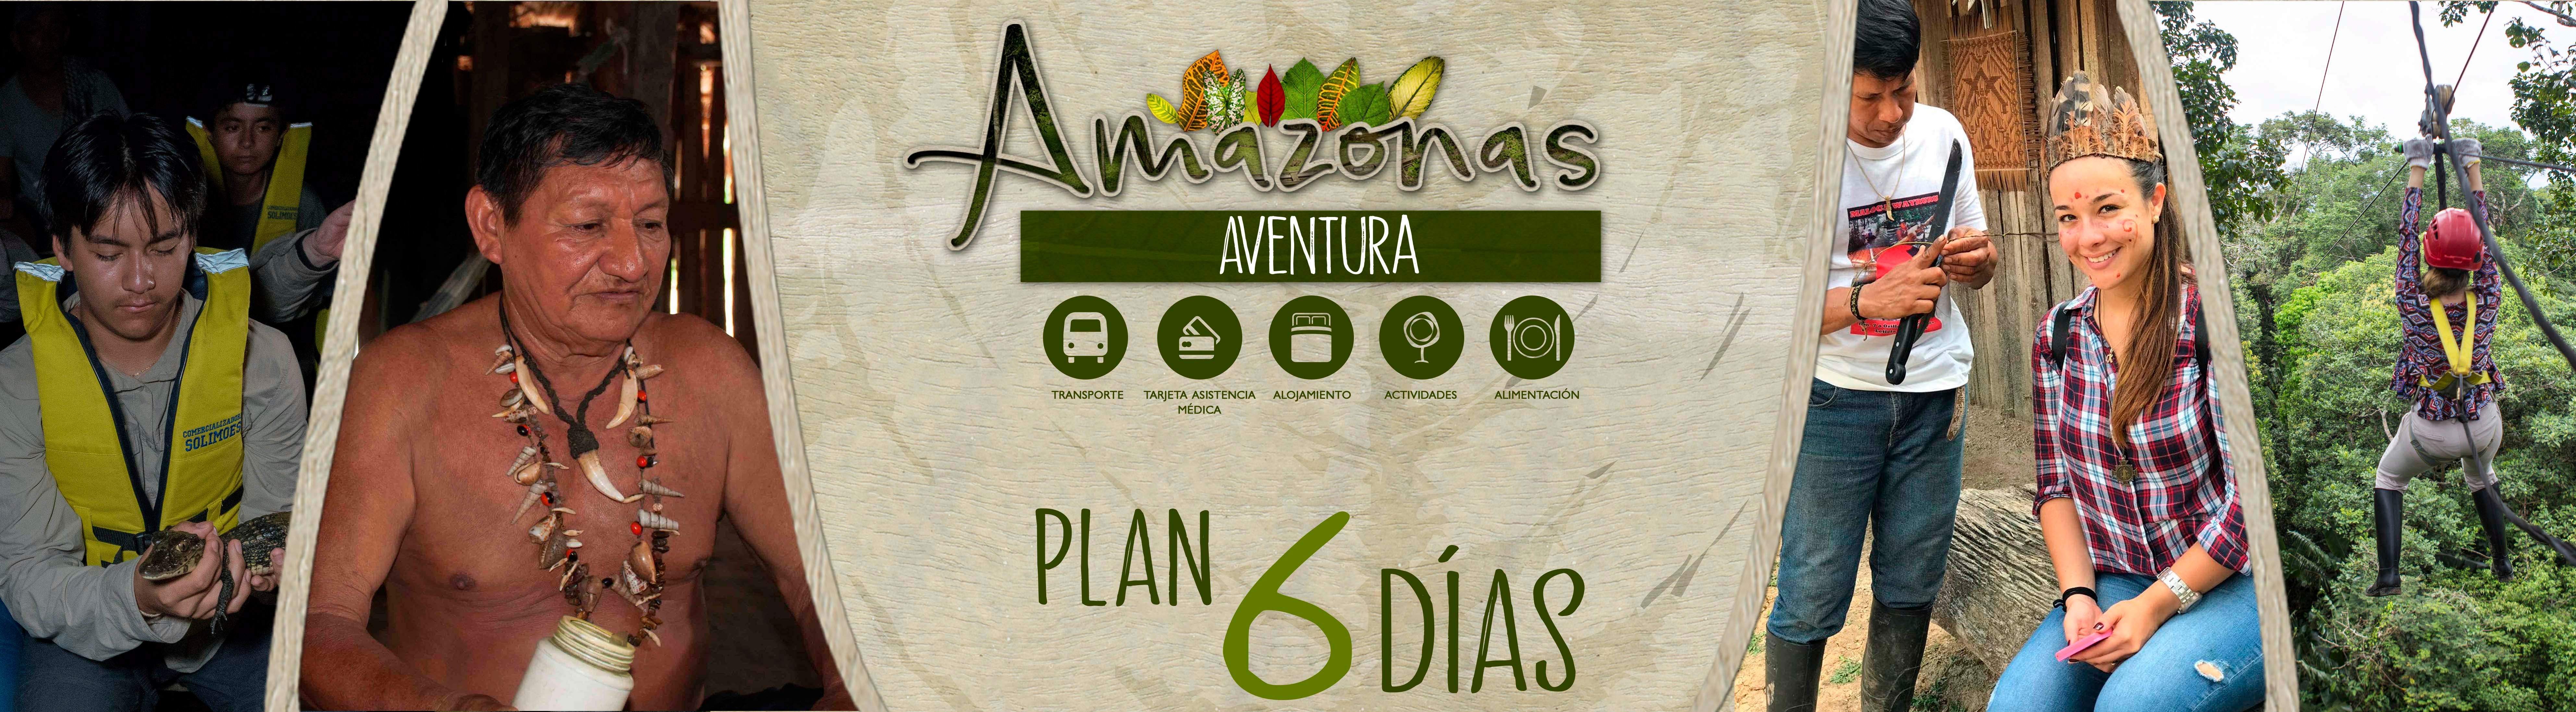 Amazonas-aventura-6-DIAS